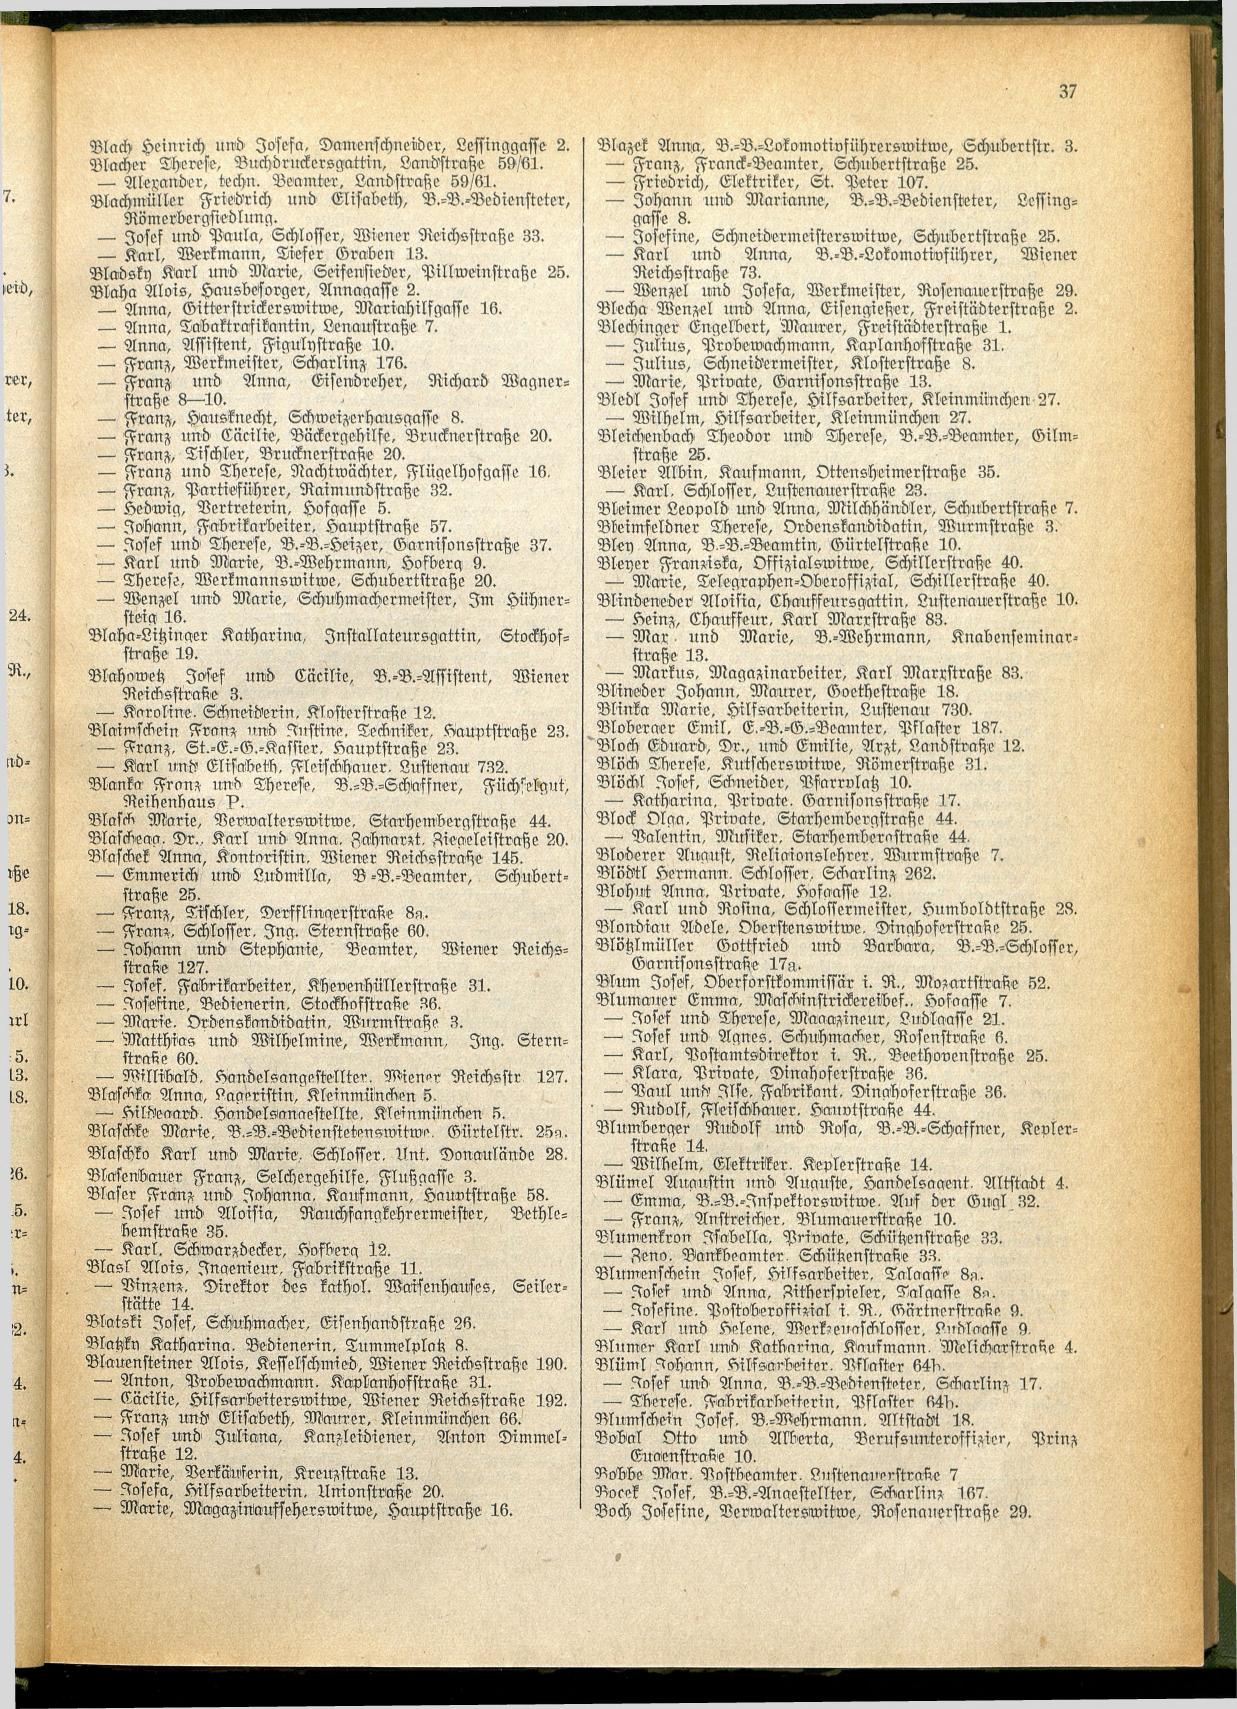 Amtliches Linzer Adreßbuch 1928 - Seite 39